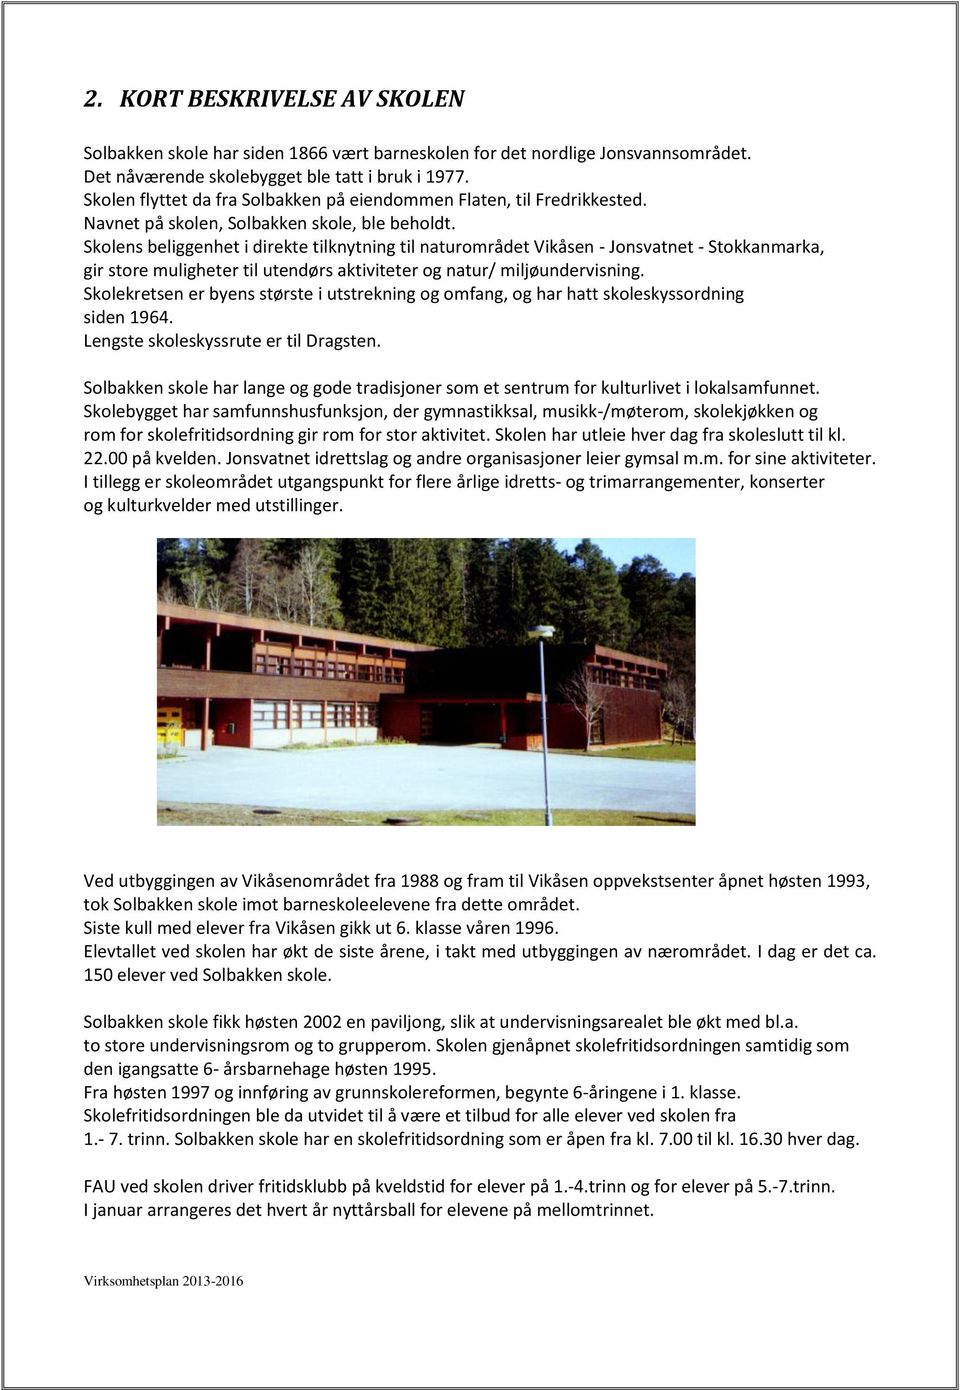 Skolens beliggenhet i direkte tilknytning til naturområdet Vikåsen - Jonsvatnet - Stokkanmarka, gir store muligheter til utendørs aktiviteter og natur/ miljøundervisning.